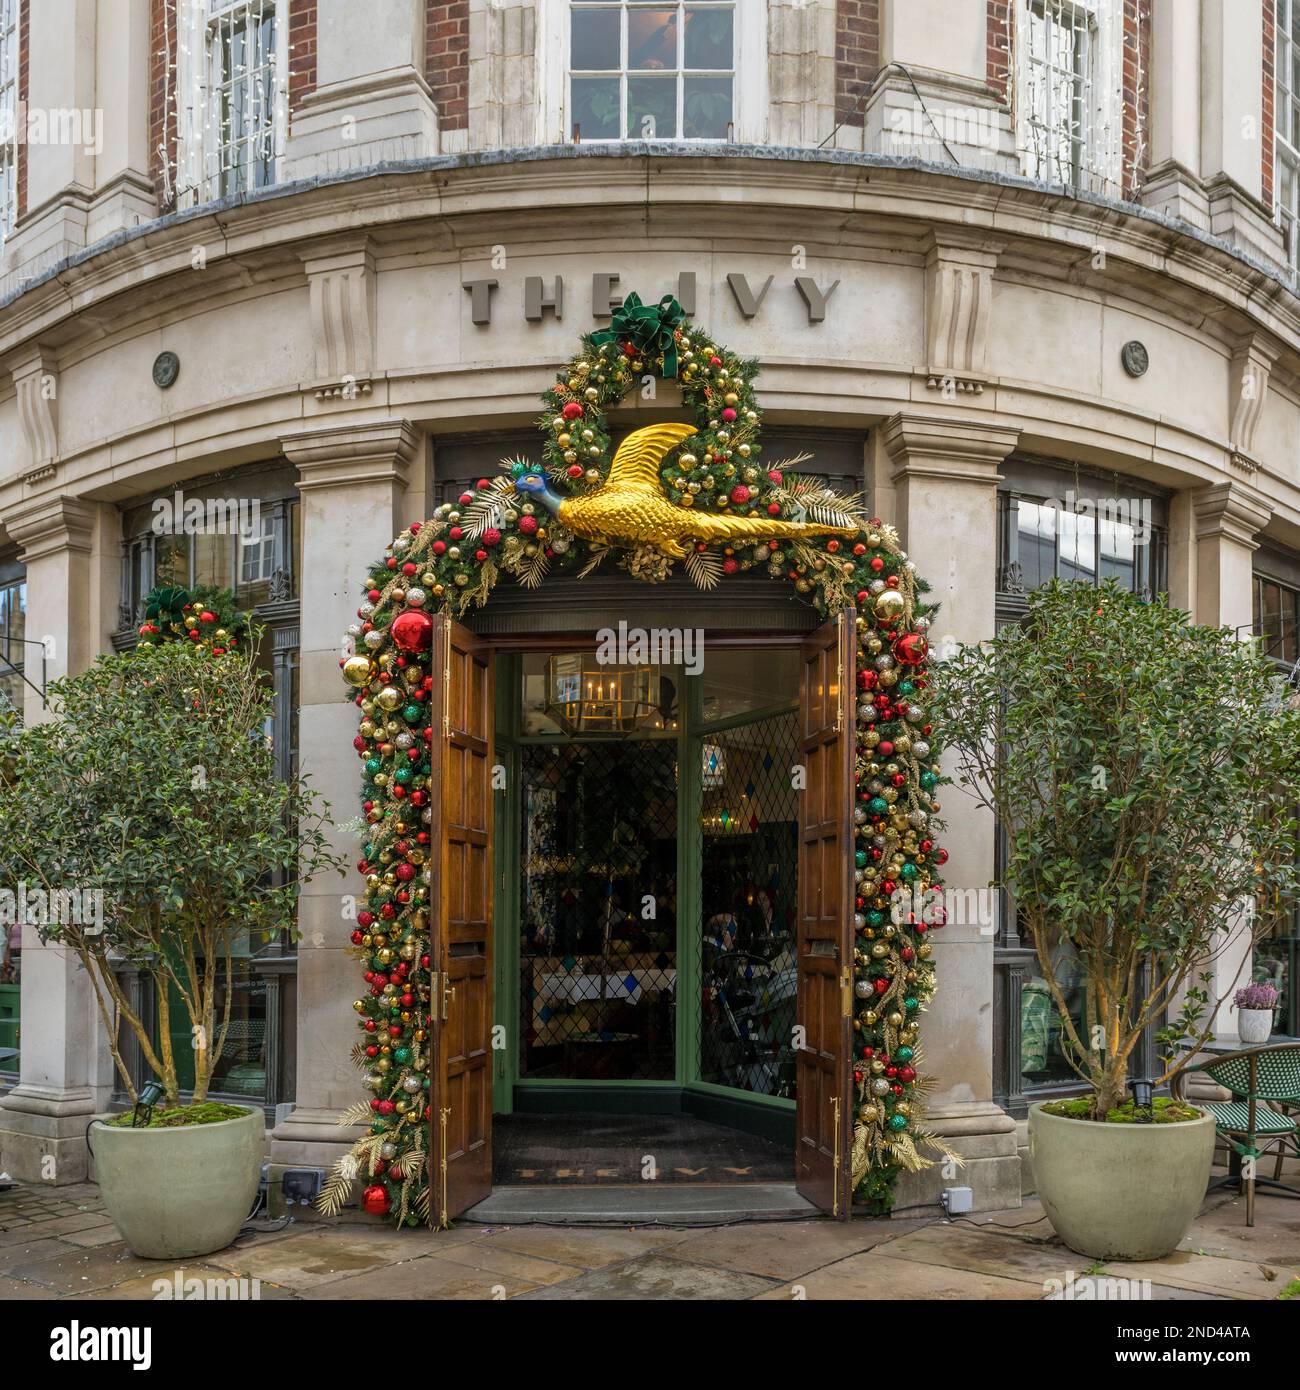 Außenfassade des Ivy Restaurants in York mit dem Eingang, dekoriert mit Weihnachtskugeln und einem großen Goldhühnchen. York UK Stockfoto